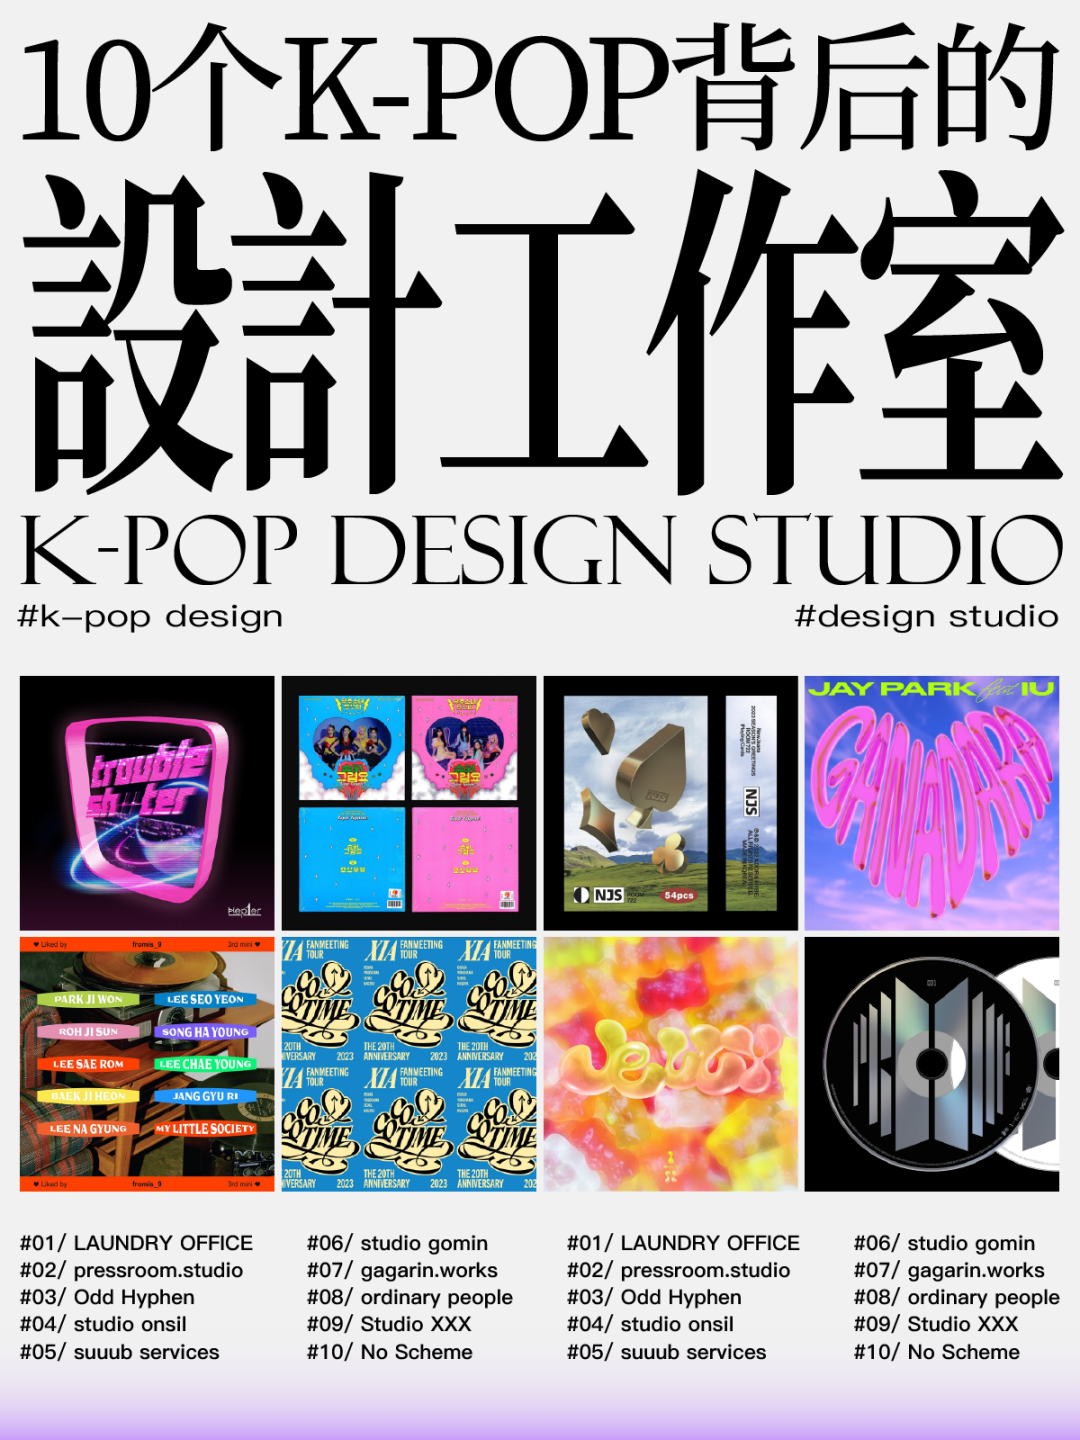 爱听k-pop的你，知道背后的设计工作室是谁吗？